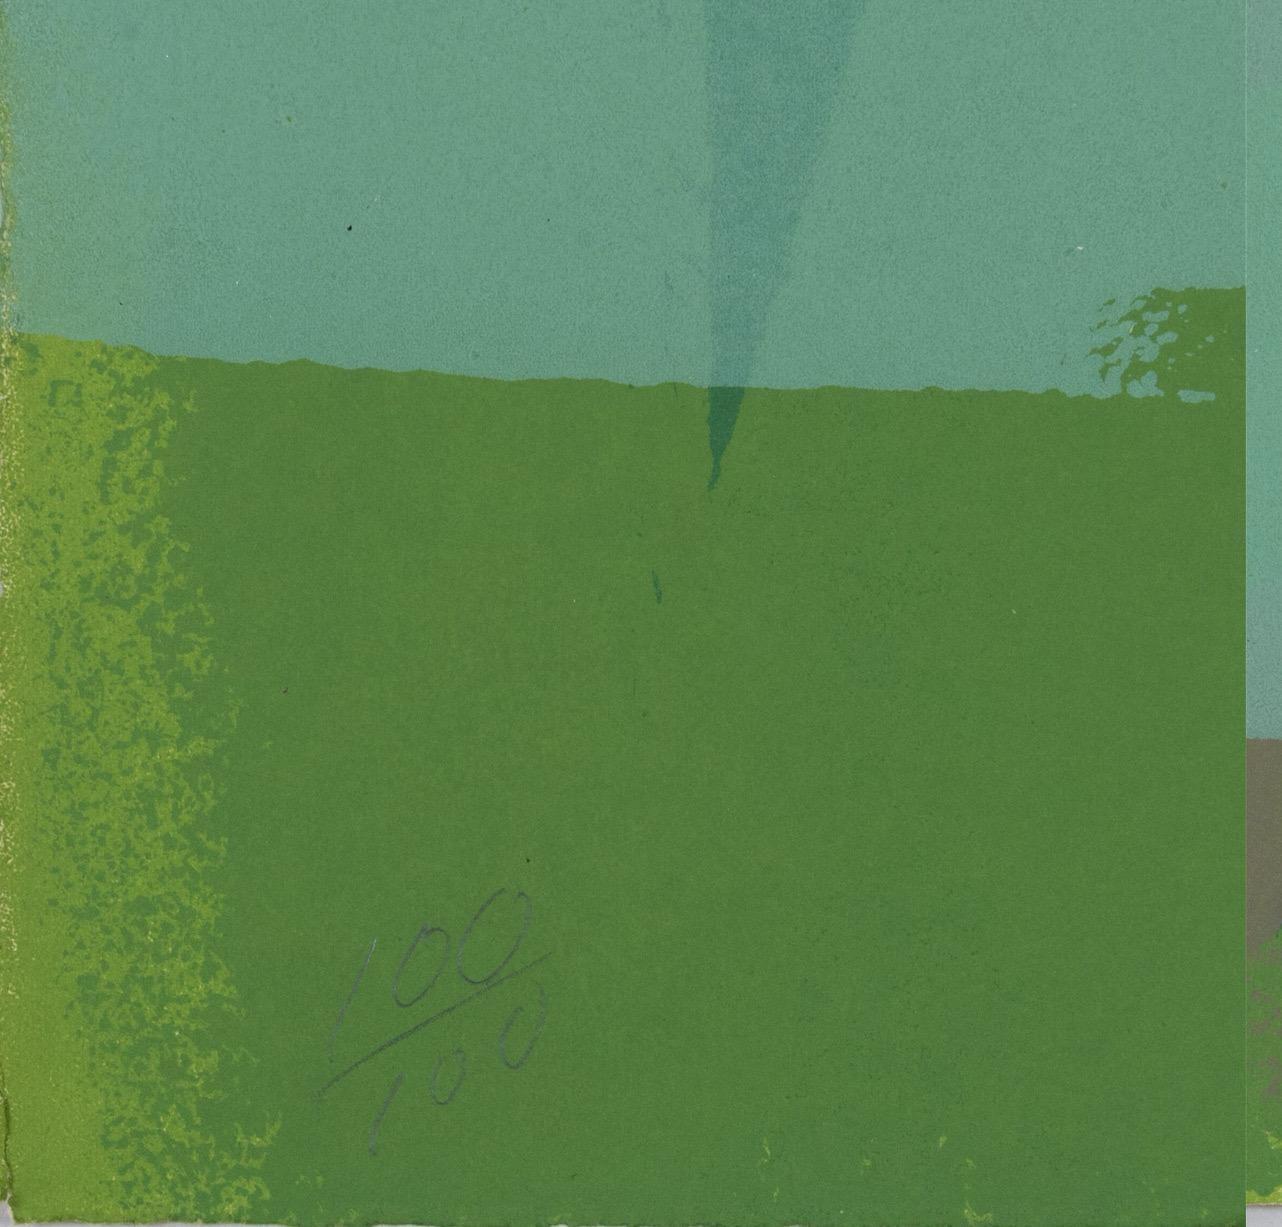 Edward Avedisian (1936-2007), Or vert, 1969

Lithographie en couleur sur papier tissé.
Signé, daté et numéroté au crayon.
Edition 100/100

Dimensions :
22 1/4 inches L x 30 1/4 inches H, non encadré

Provenance : 
Galerie Brooke Alexander, NY